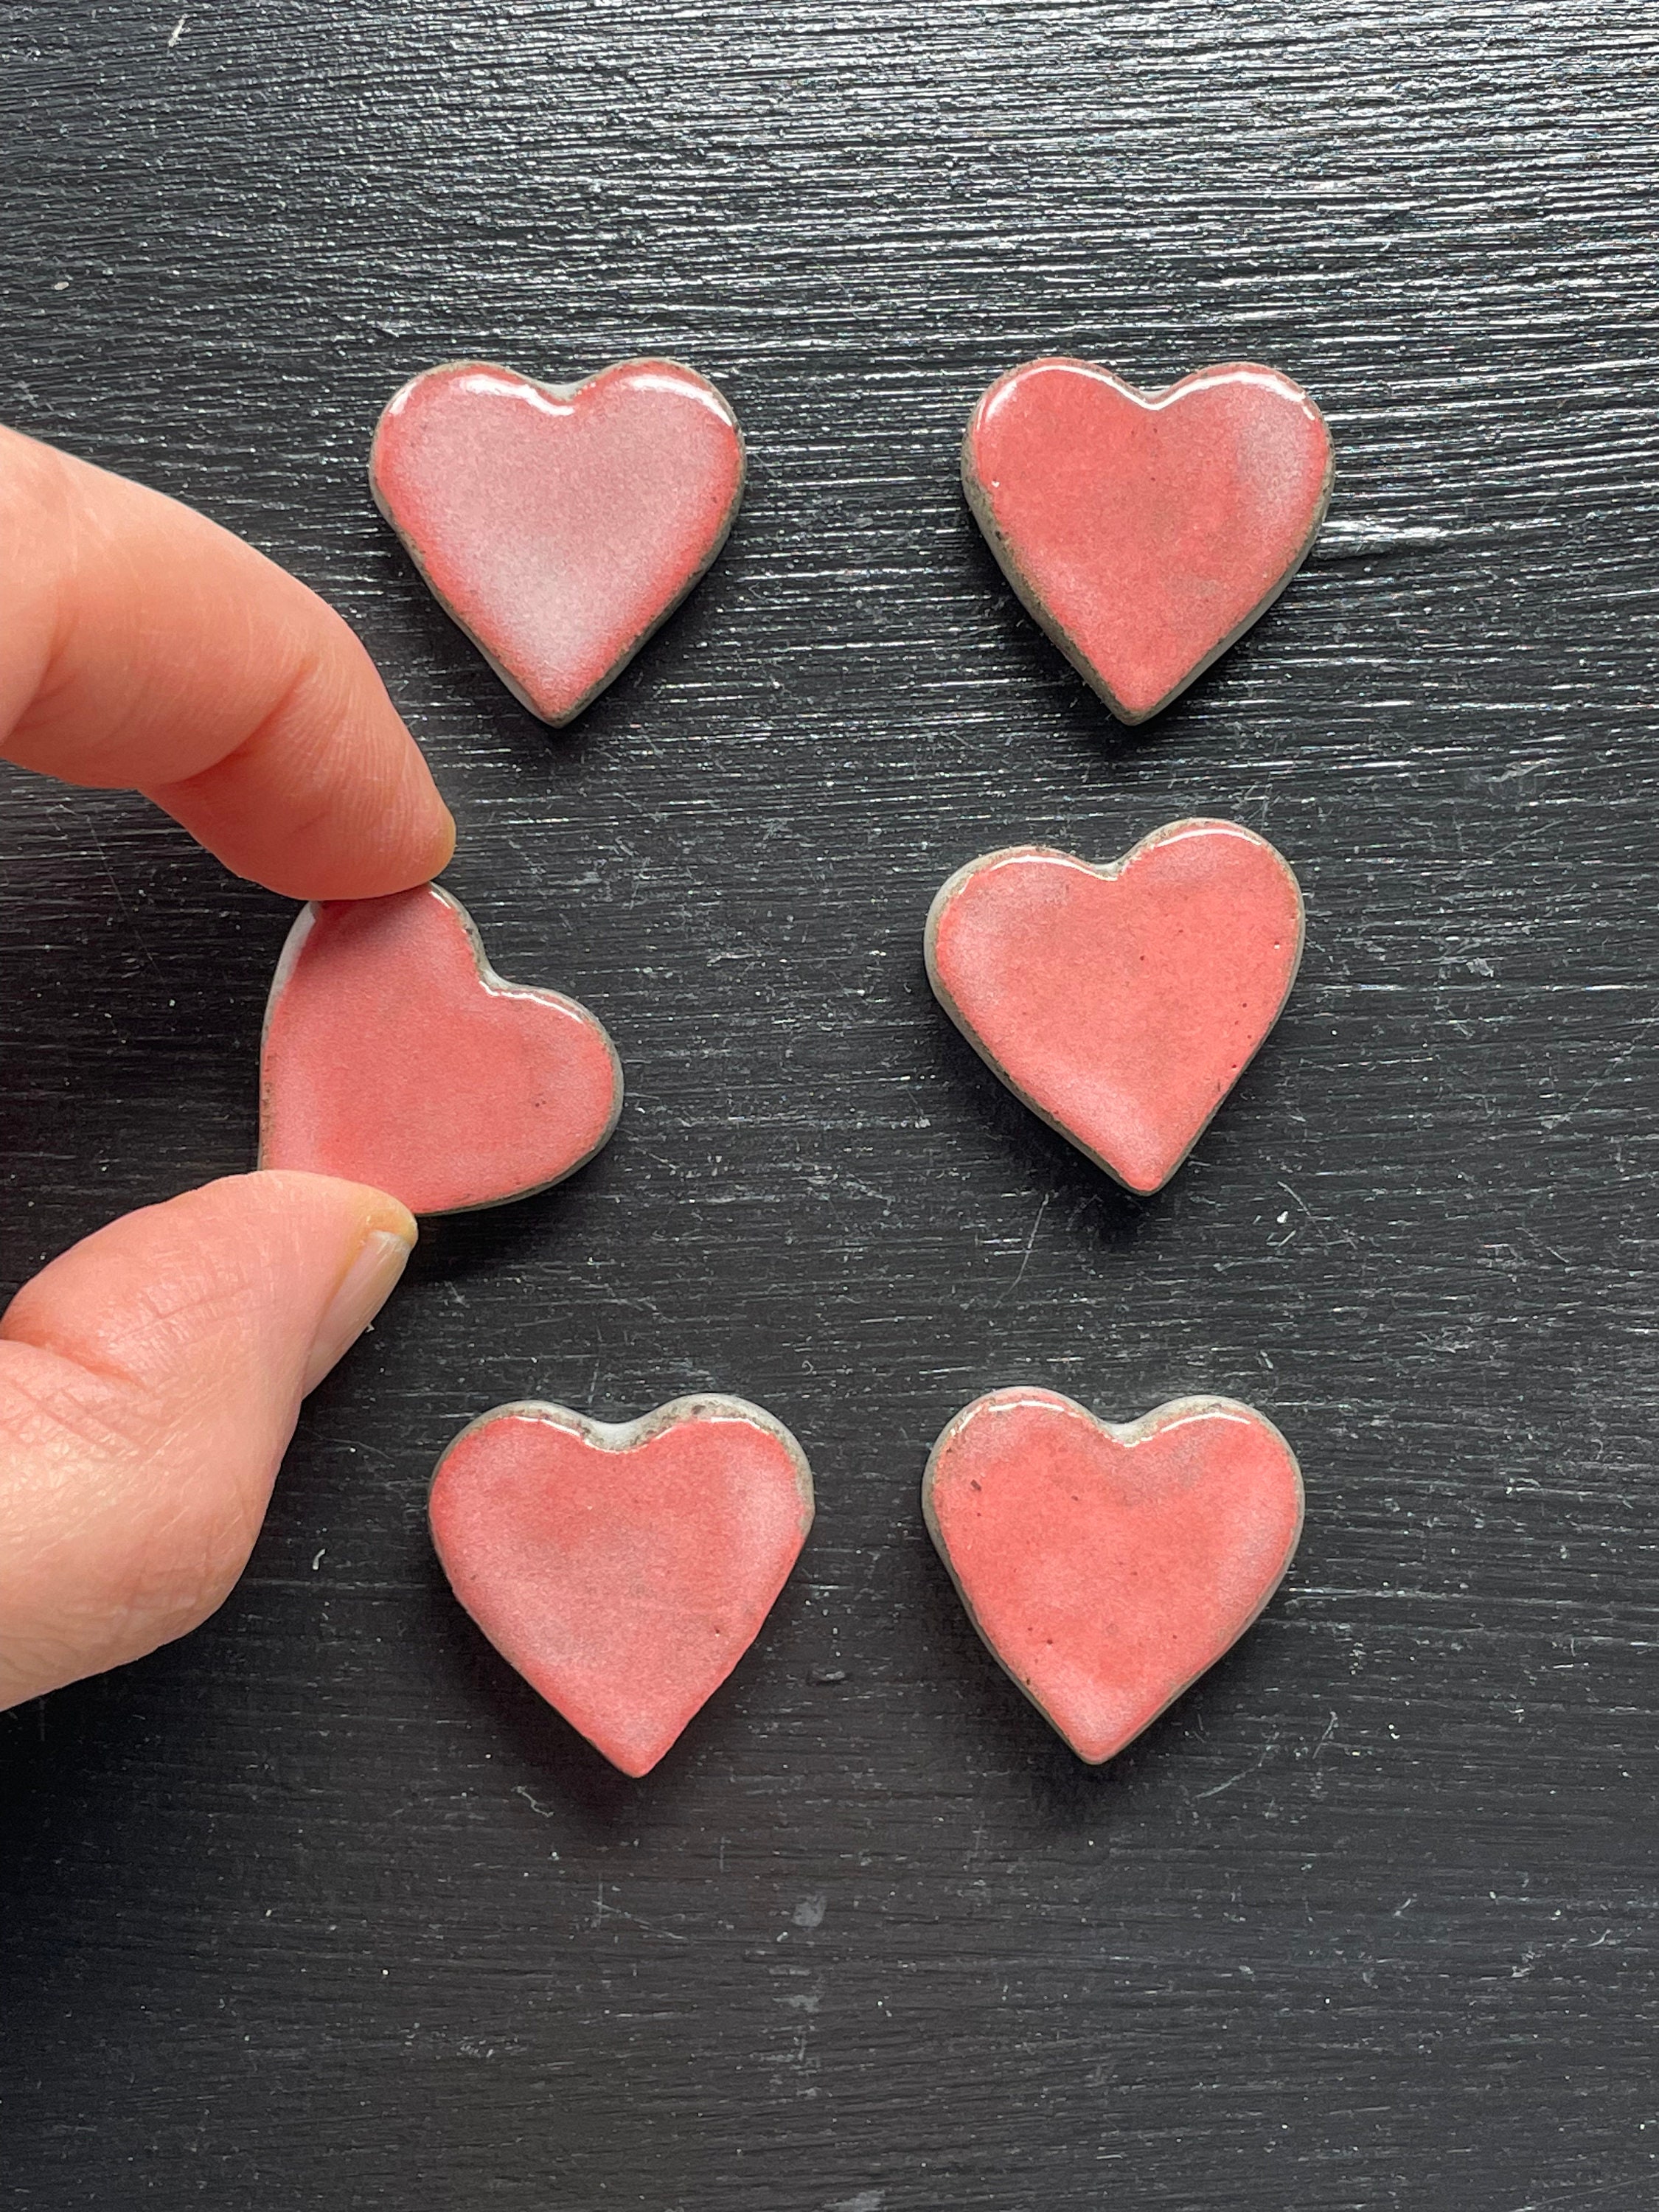 Custom Heart Magnets for Fridge, Car + Free Shipping